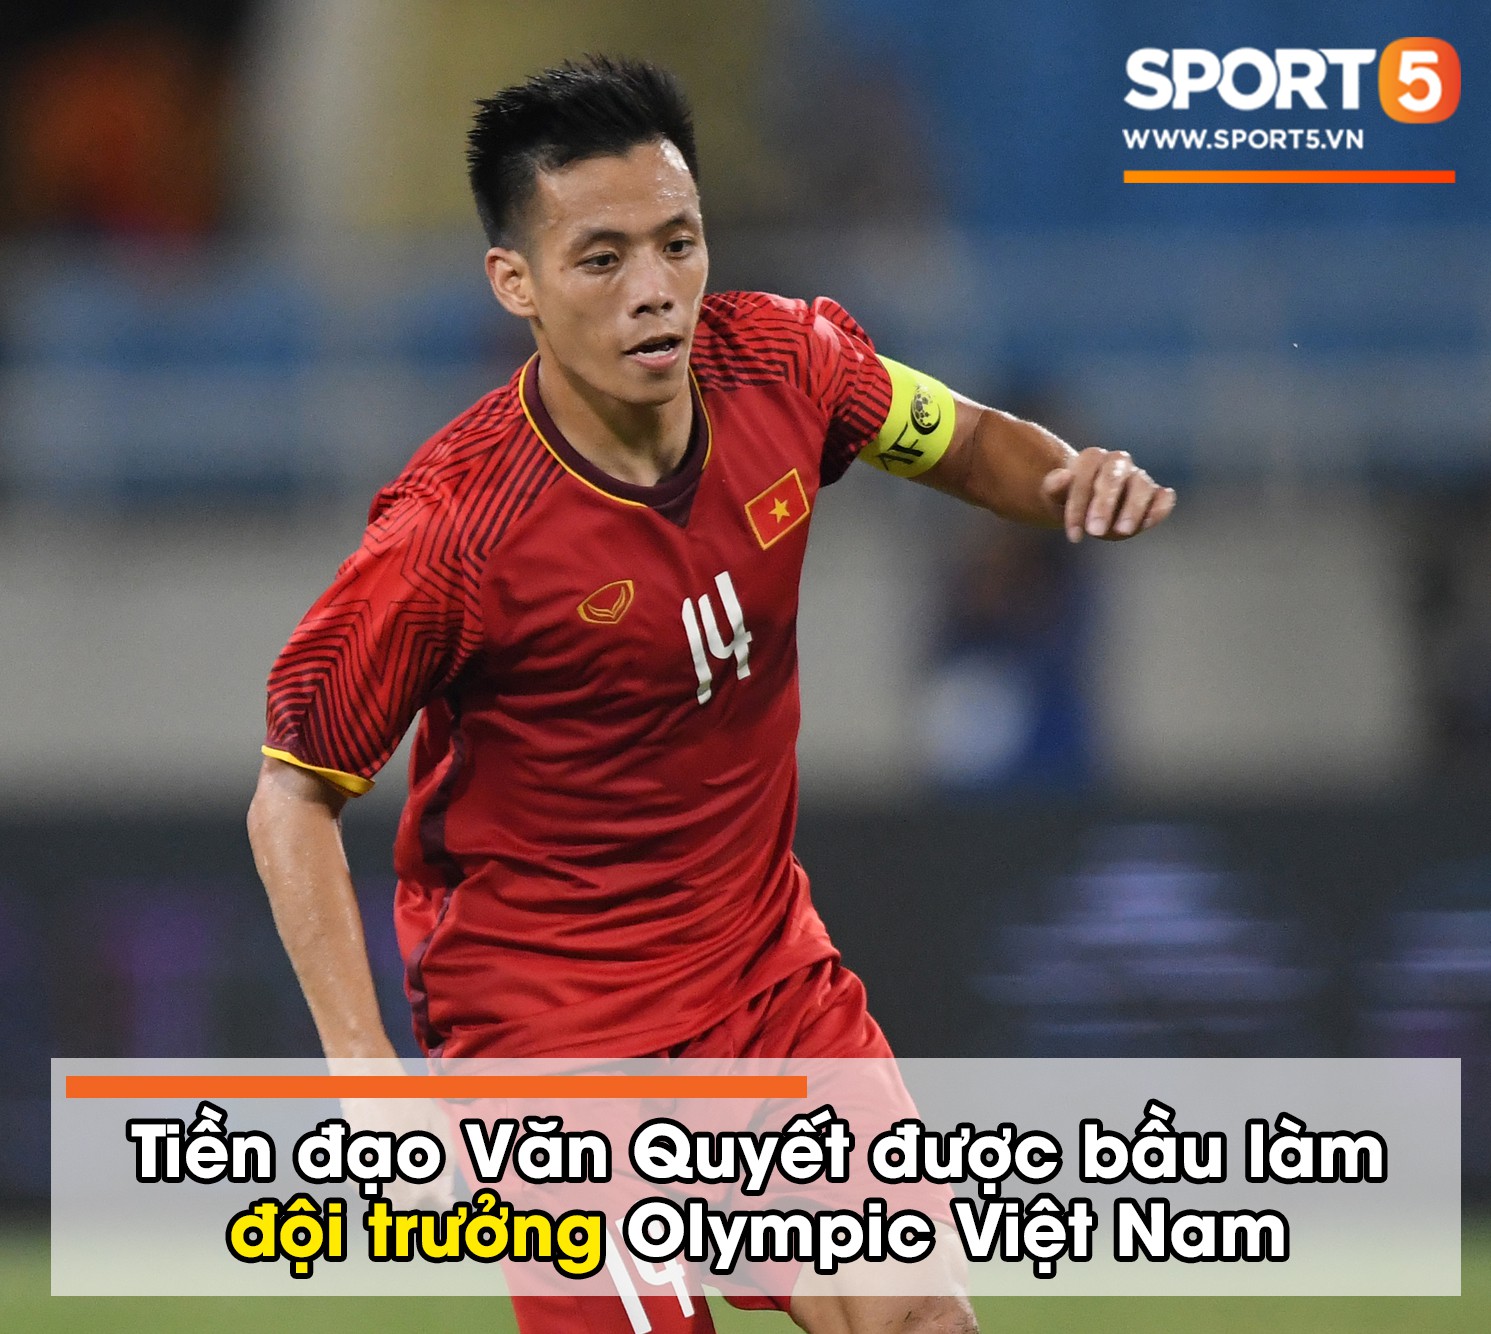 NÓNG: Văn Quyết mang băng đội trưởng, Xuân Trường làm đội phó Olympic Việt Nam - Ảnh 1.